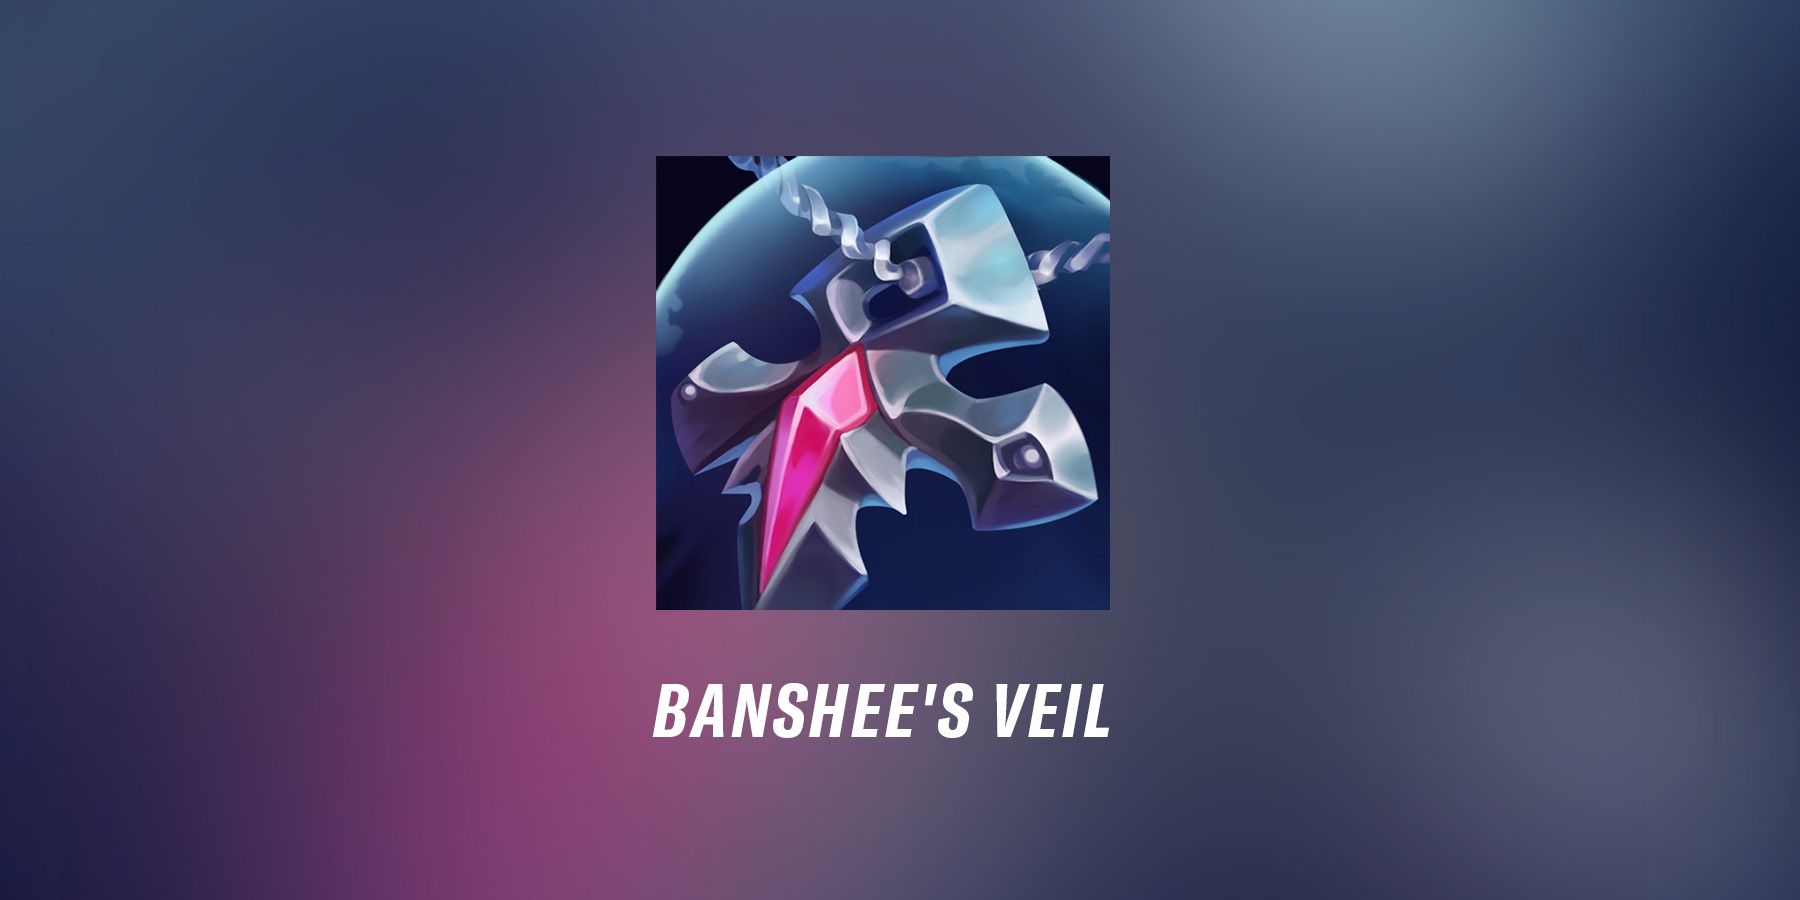 League of Legends Banshee's Veil